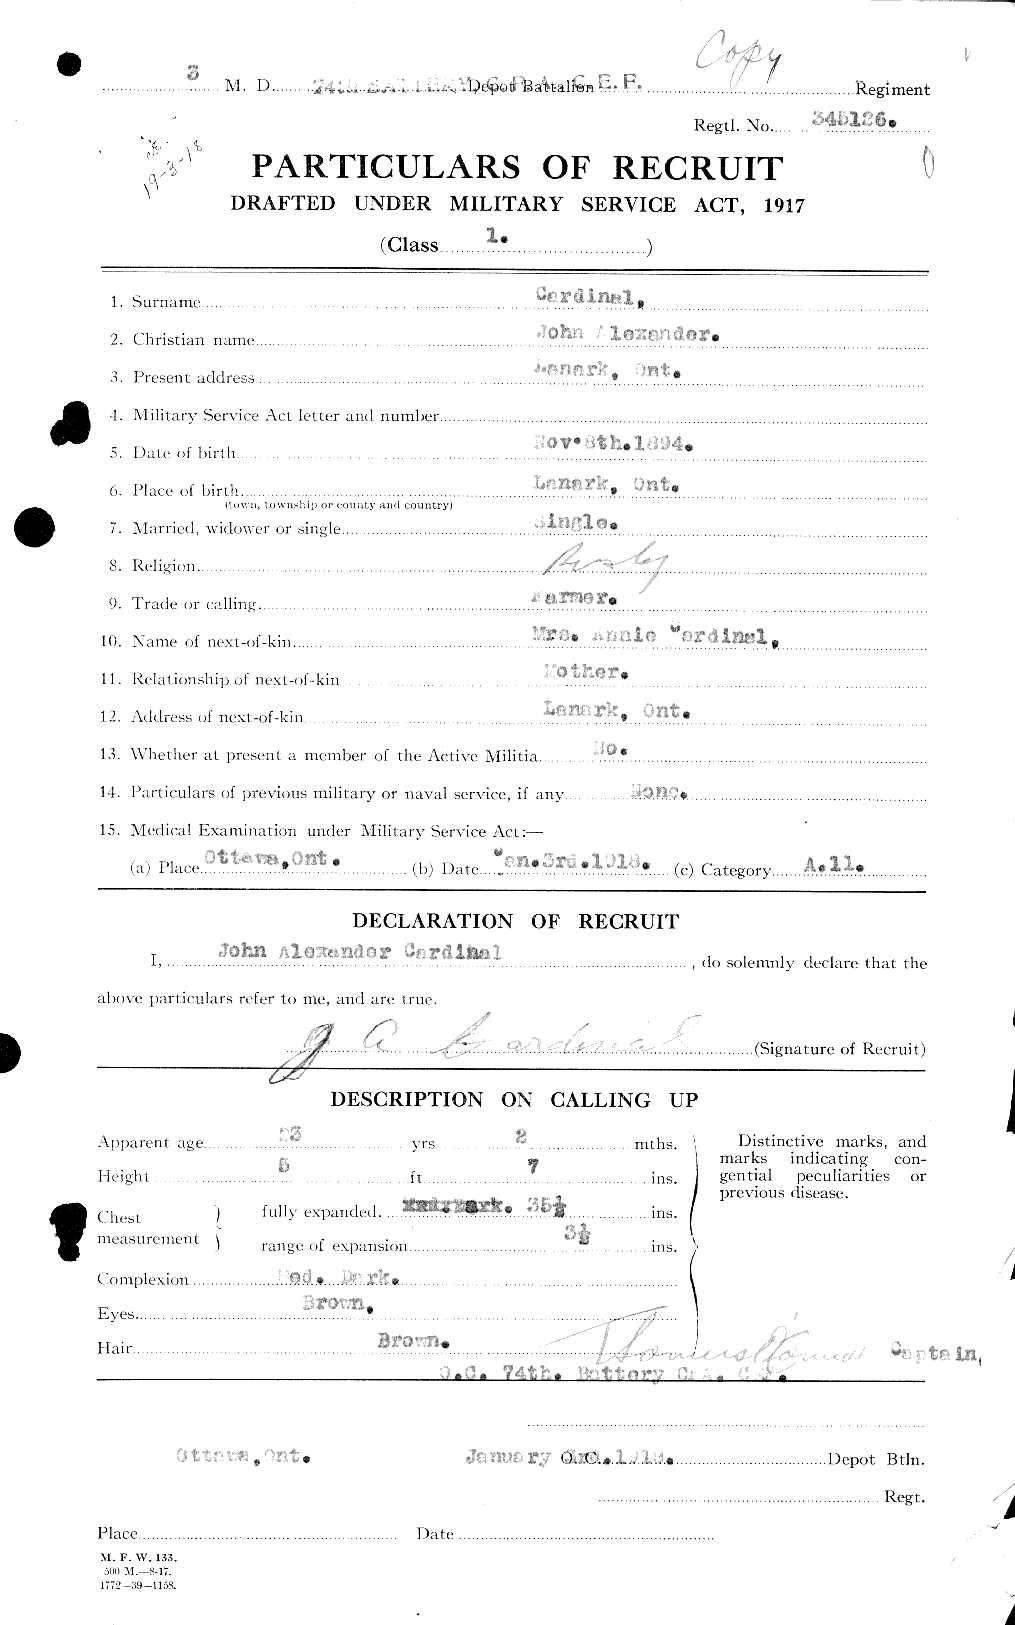 Dossiers du Personnel de la Première Guerre mondiale - CEC 009262a